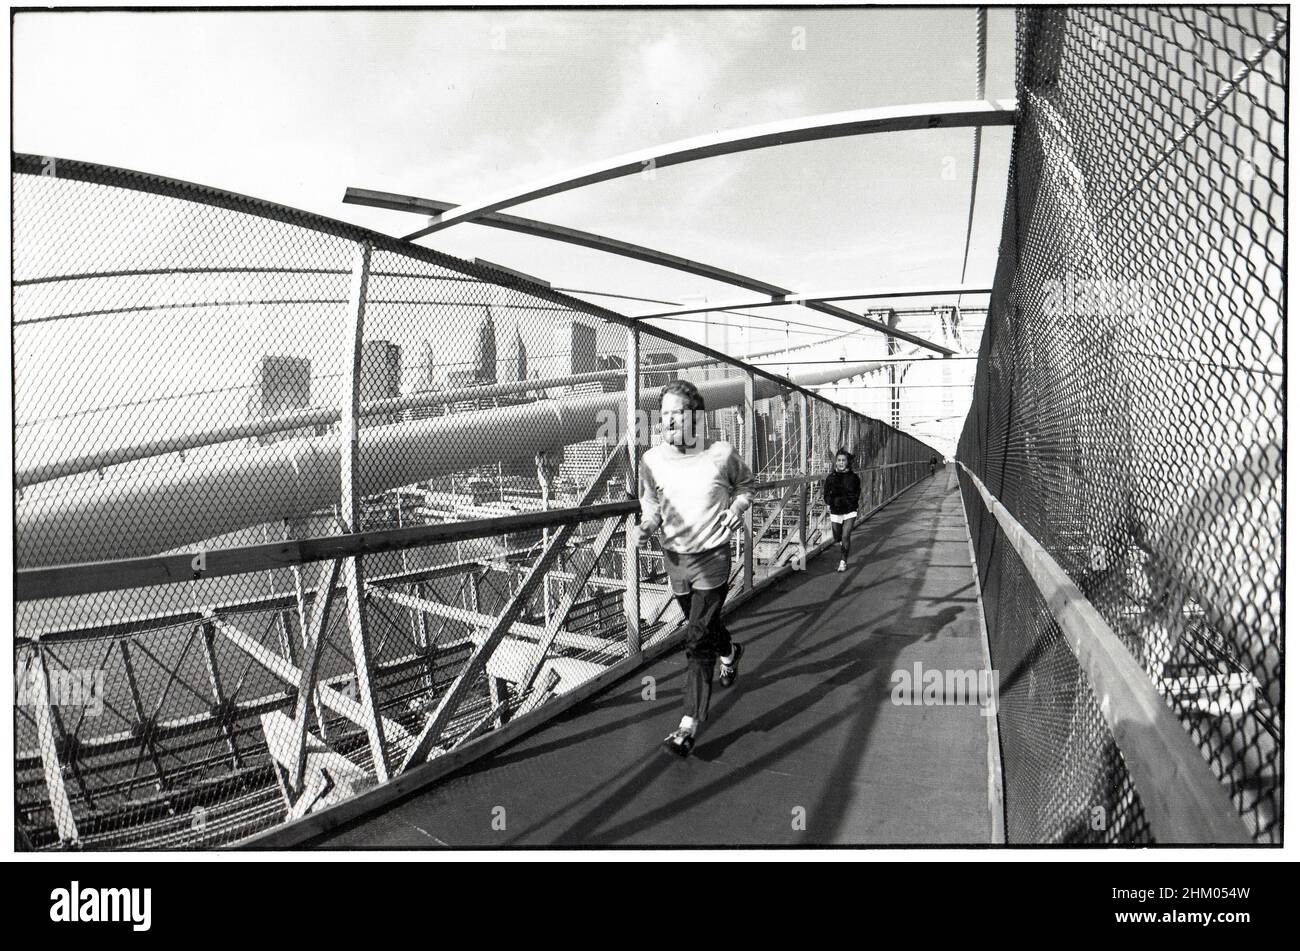 Une rampe temporaire au-dessus du pont de Brooklyn pendant que la piste piétonne et cyclable était en cours de rénovation.Vers 1980 quand le pont était en grave déréparation. Banque D'Images